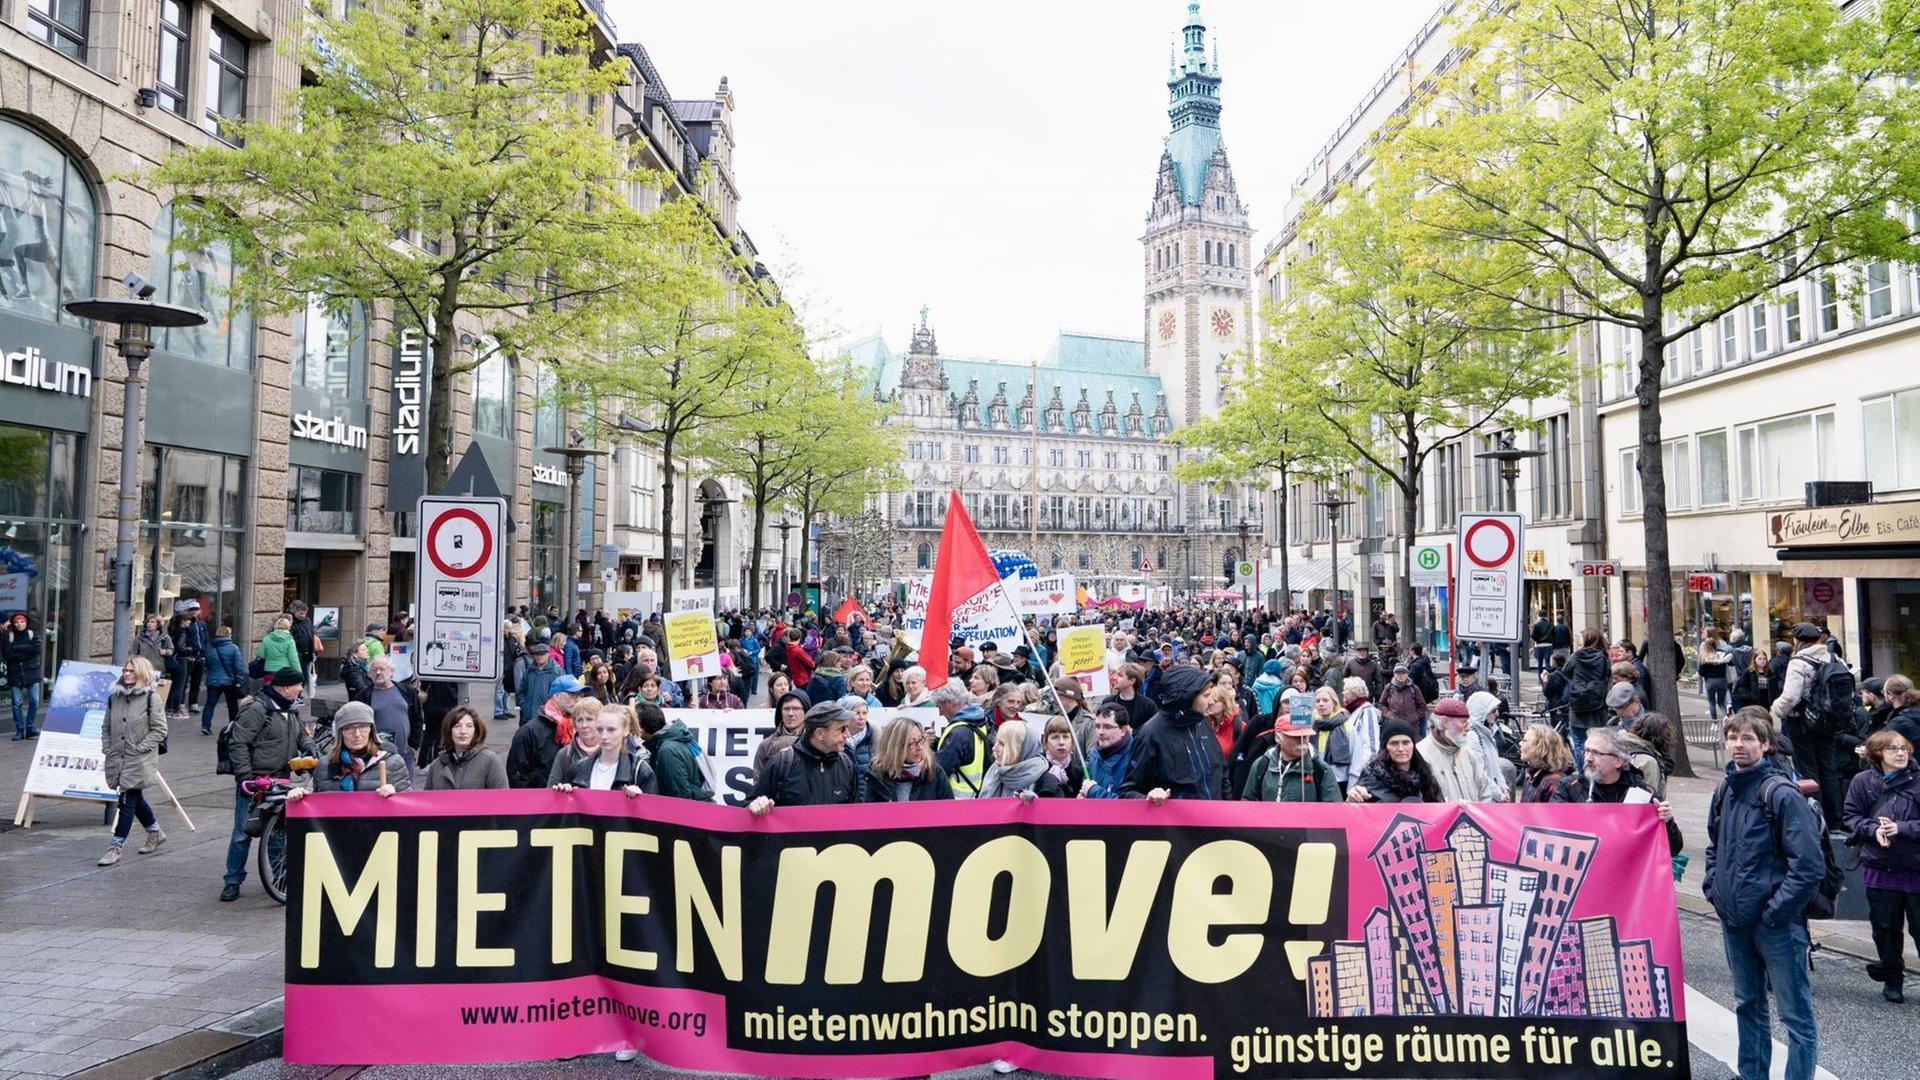 Ein Demonstrationszug gegen zu hohe Mieten zieht durch die Hamburger Innenstadt. "Mieten Move!" steht auf einem Transparent.